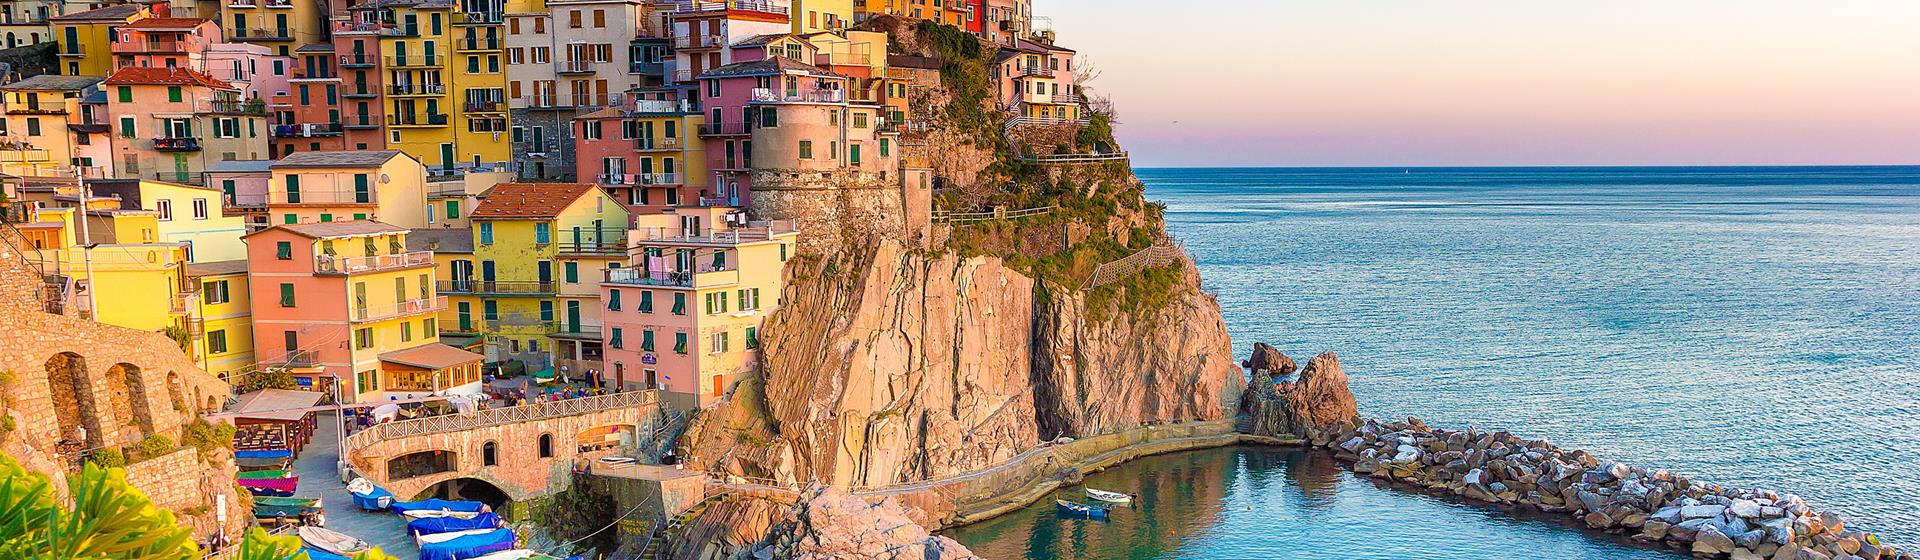 Holidays to Amalfi Coast